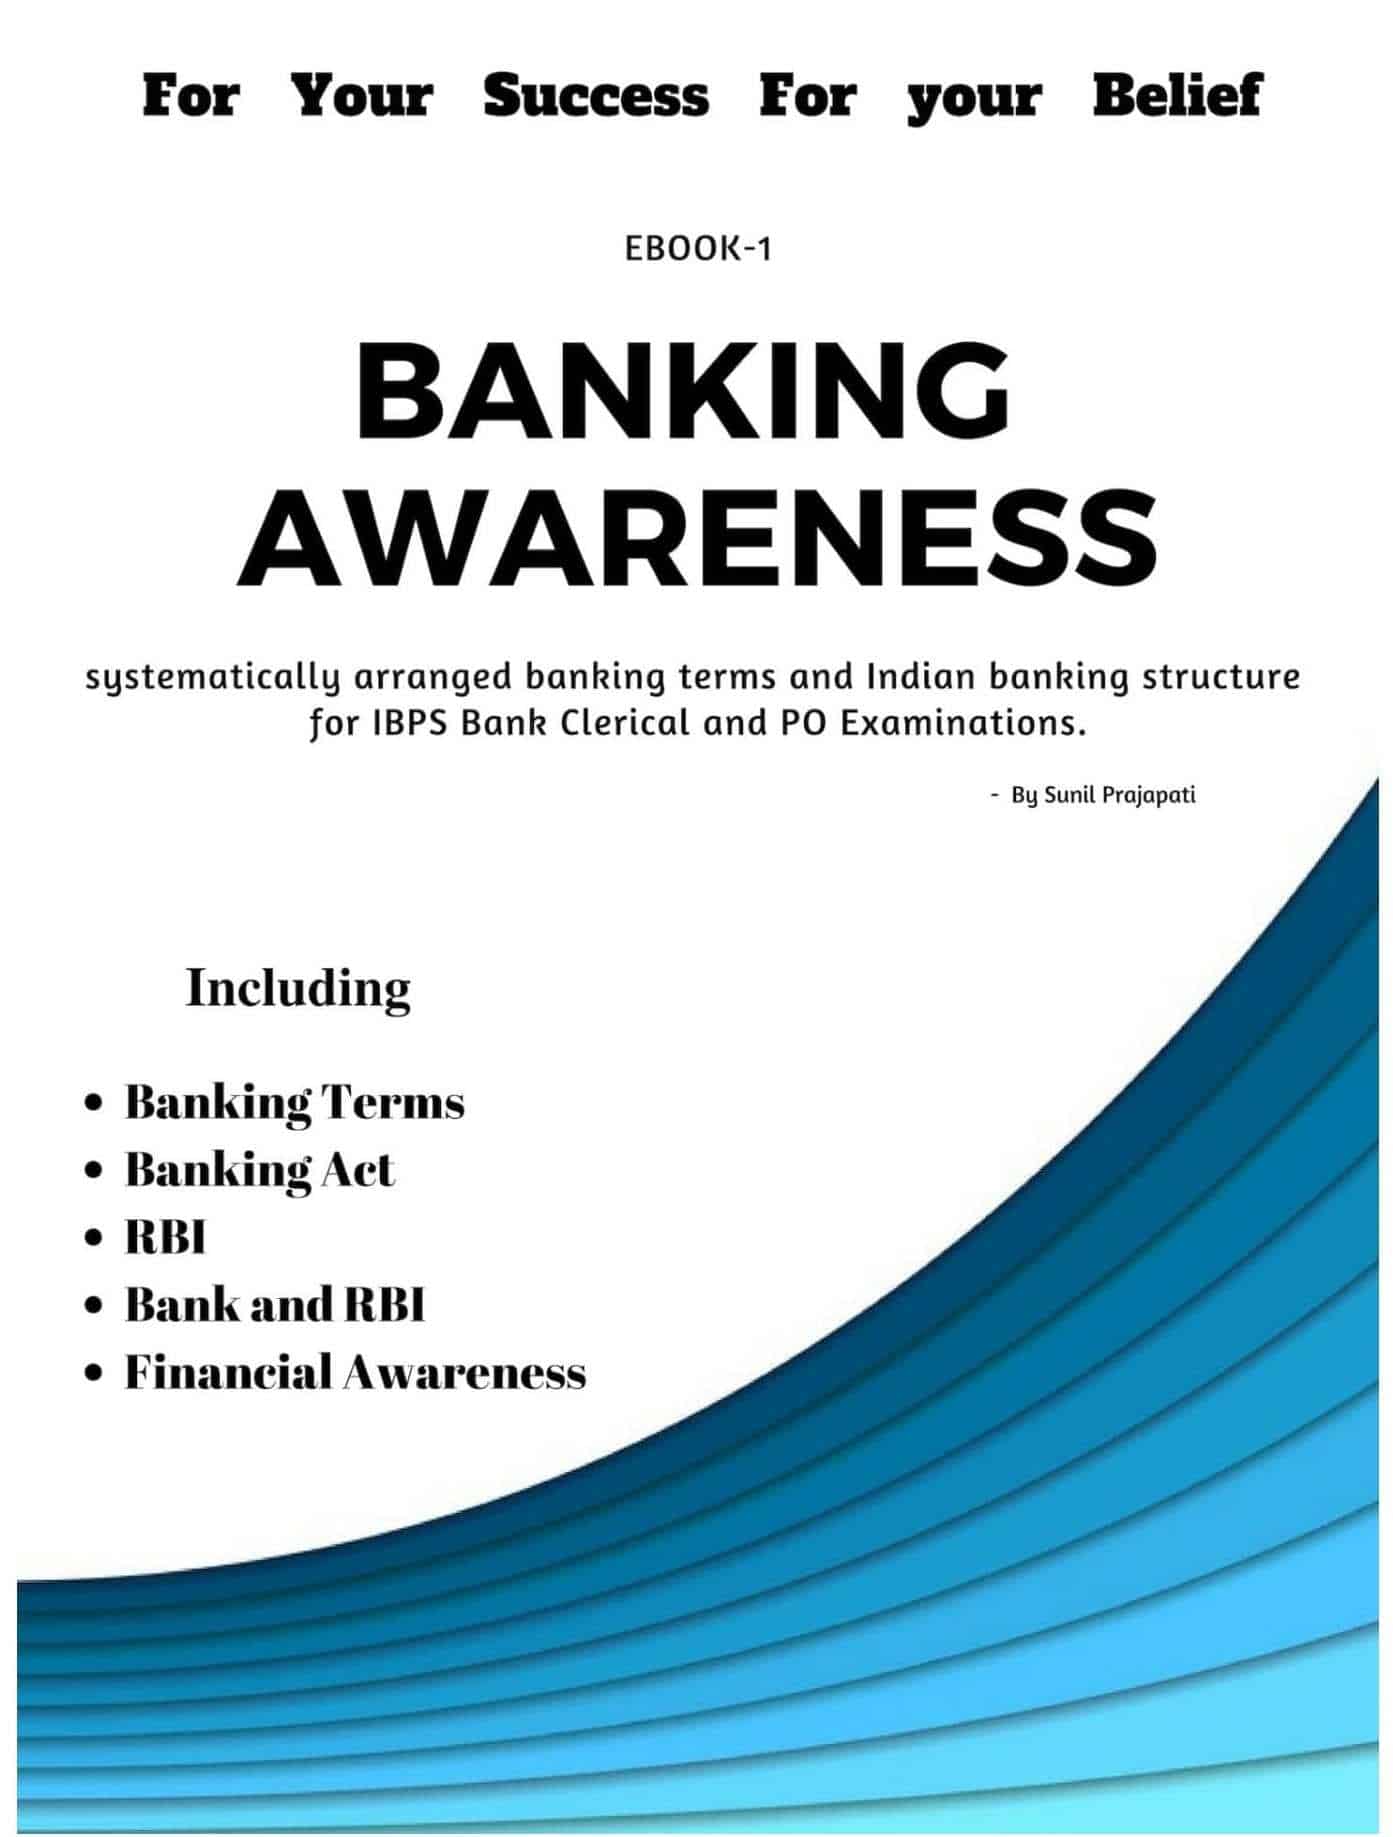 Banking Awareness by Sunil Prajapati